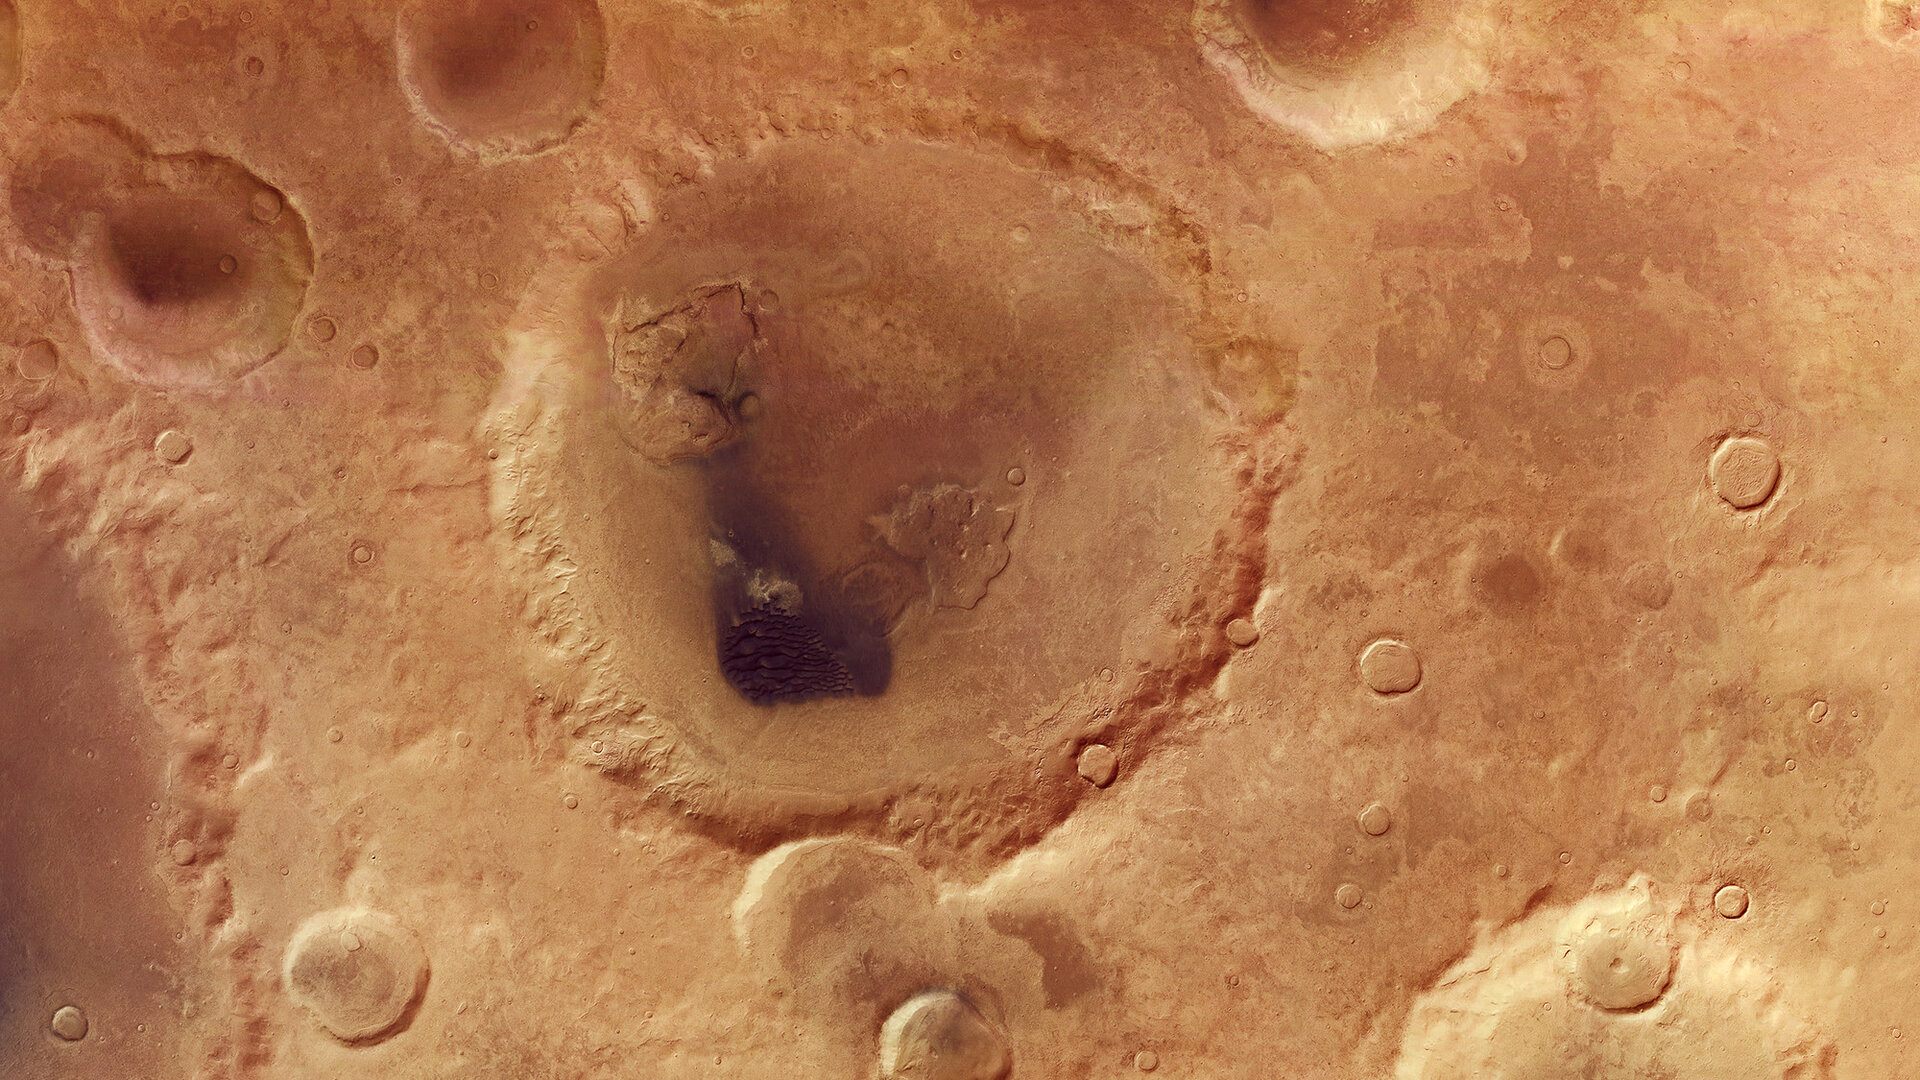 Neukum Crater